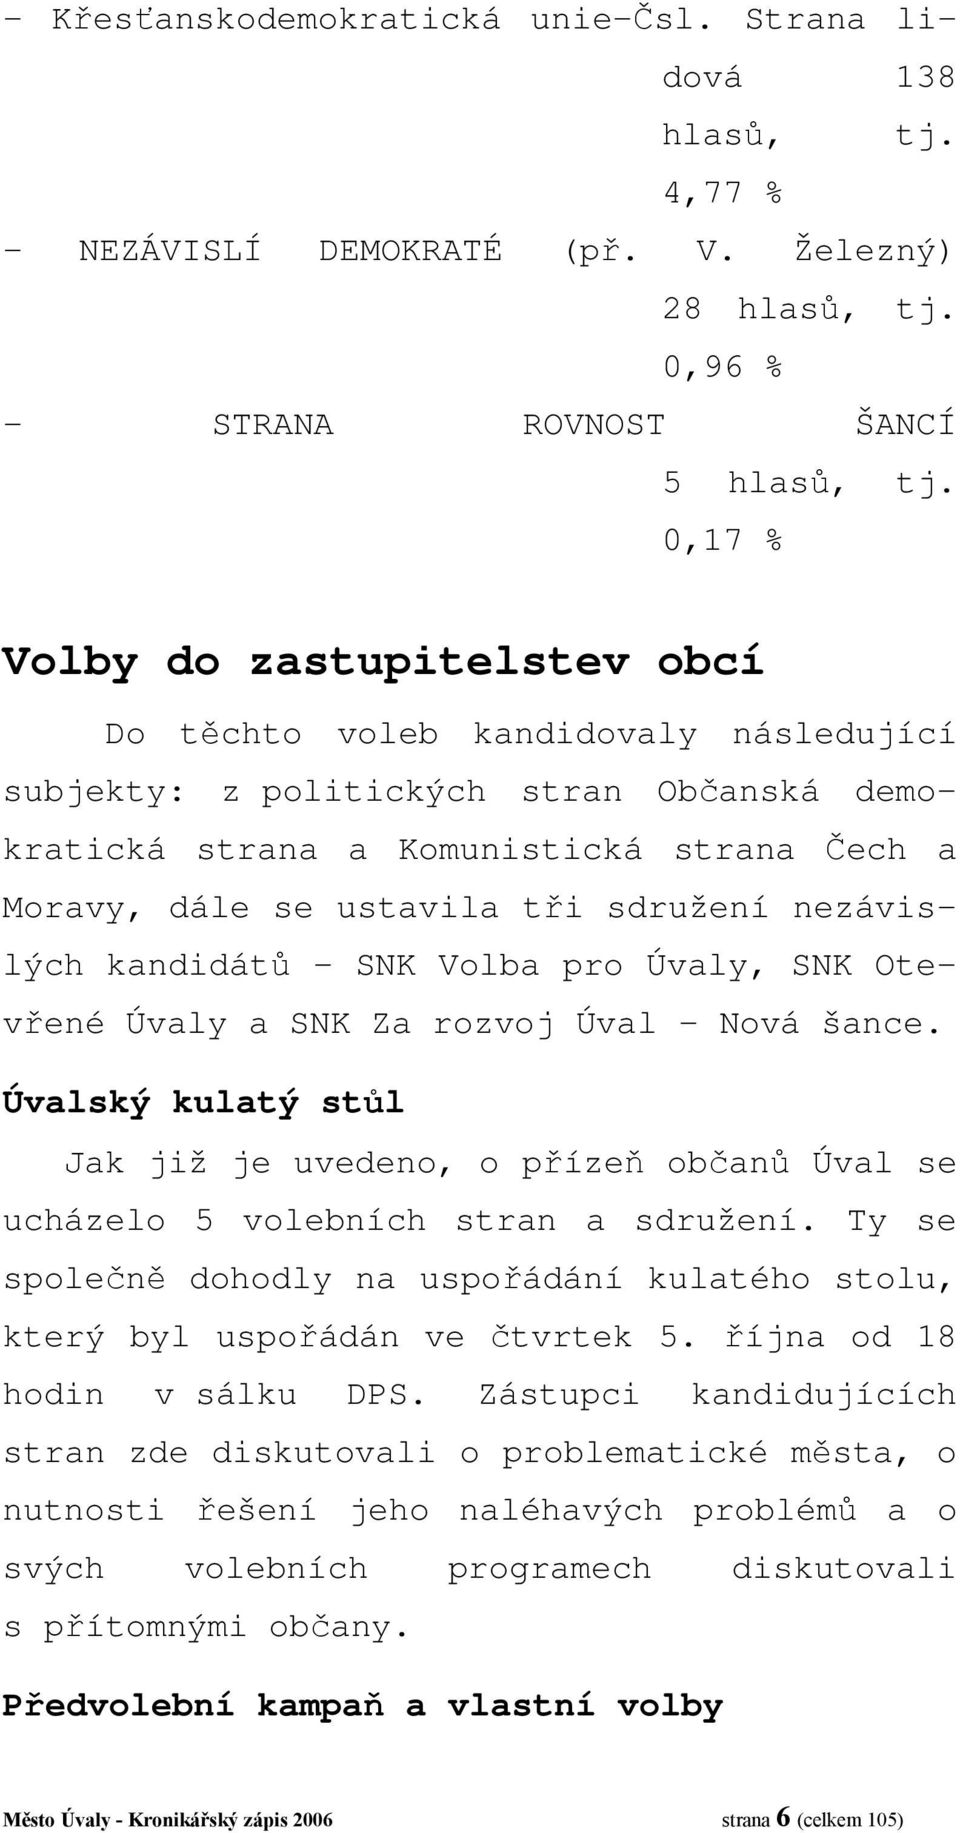 sdružení nezávislých kandidátů SNK Volba pro Úvaly, SNK Otevřené Úvaly a SNK Za rozvoj Úval Nová šance.